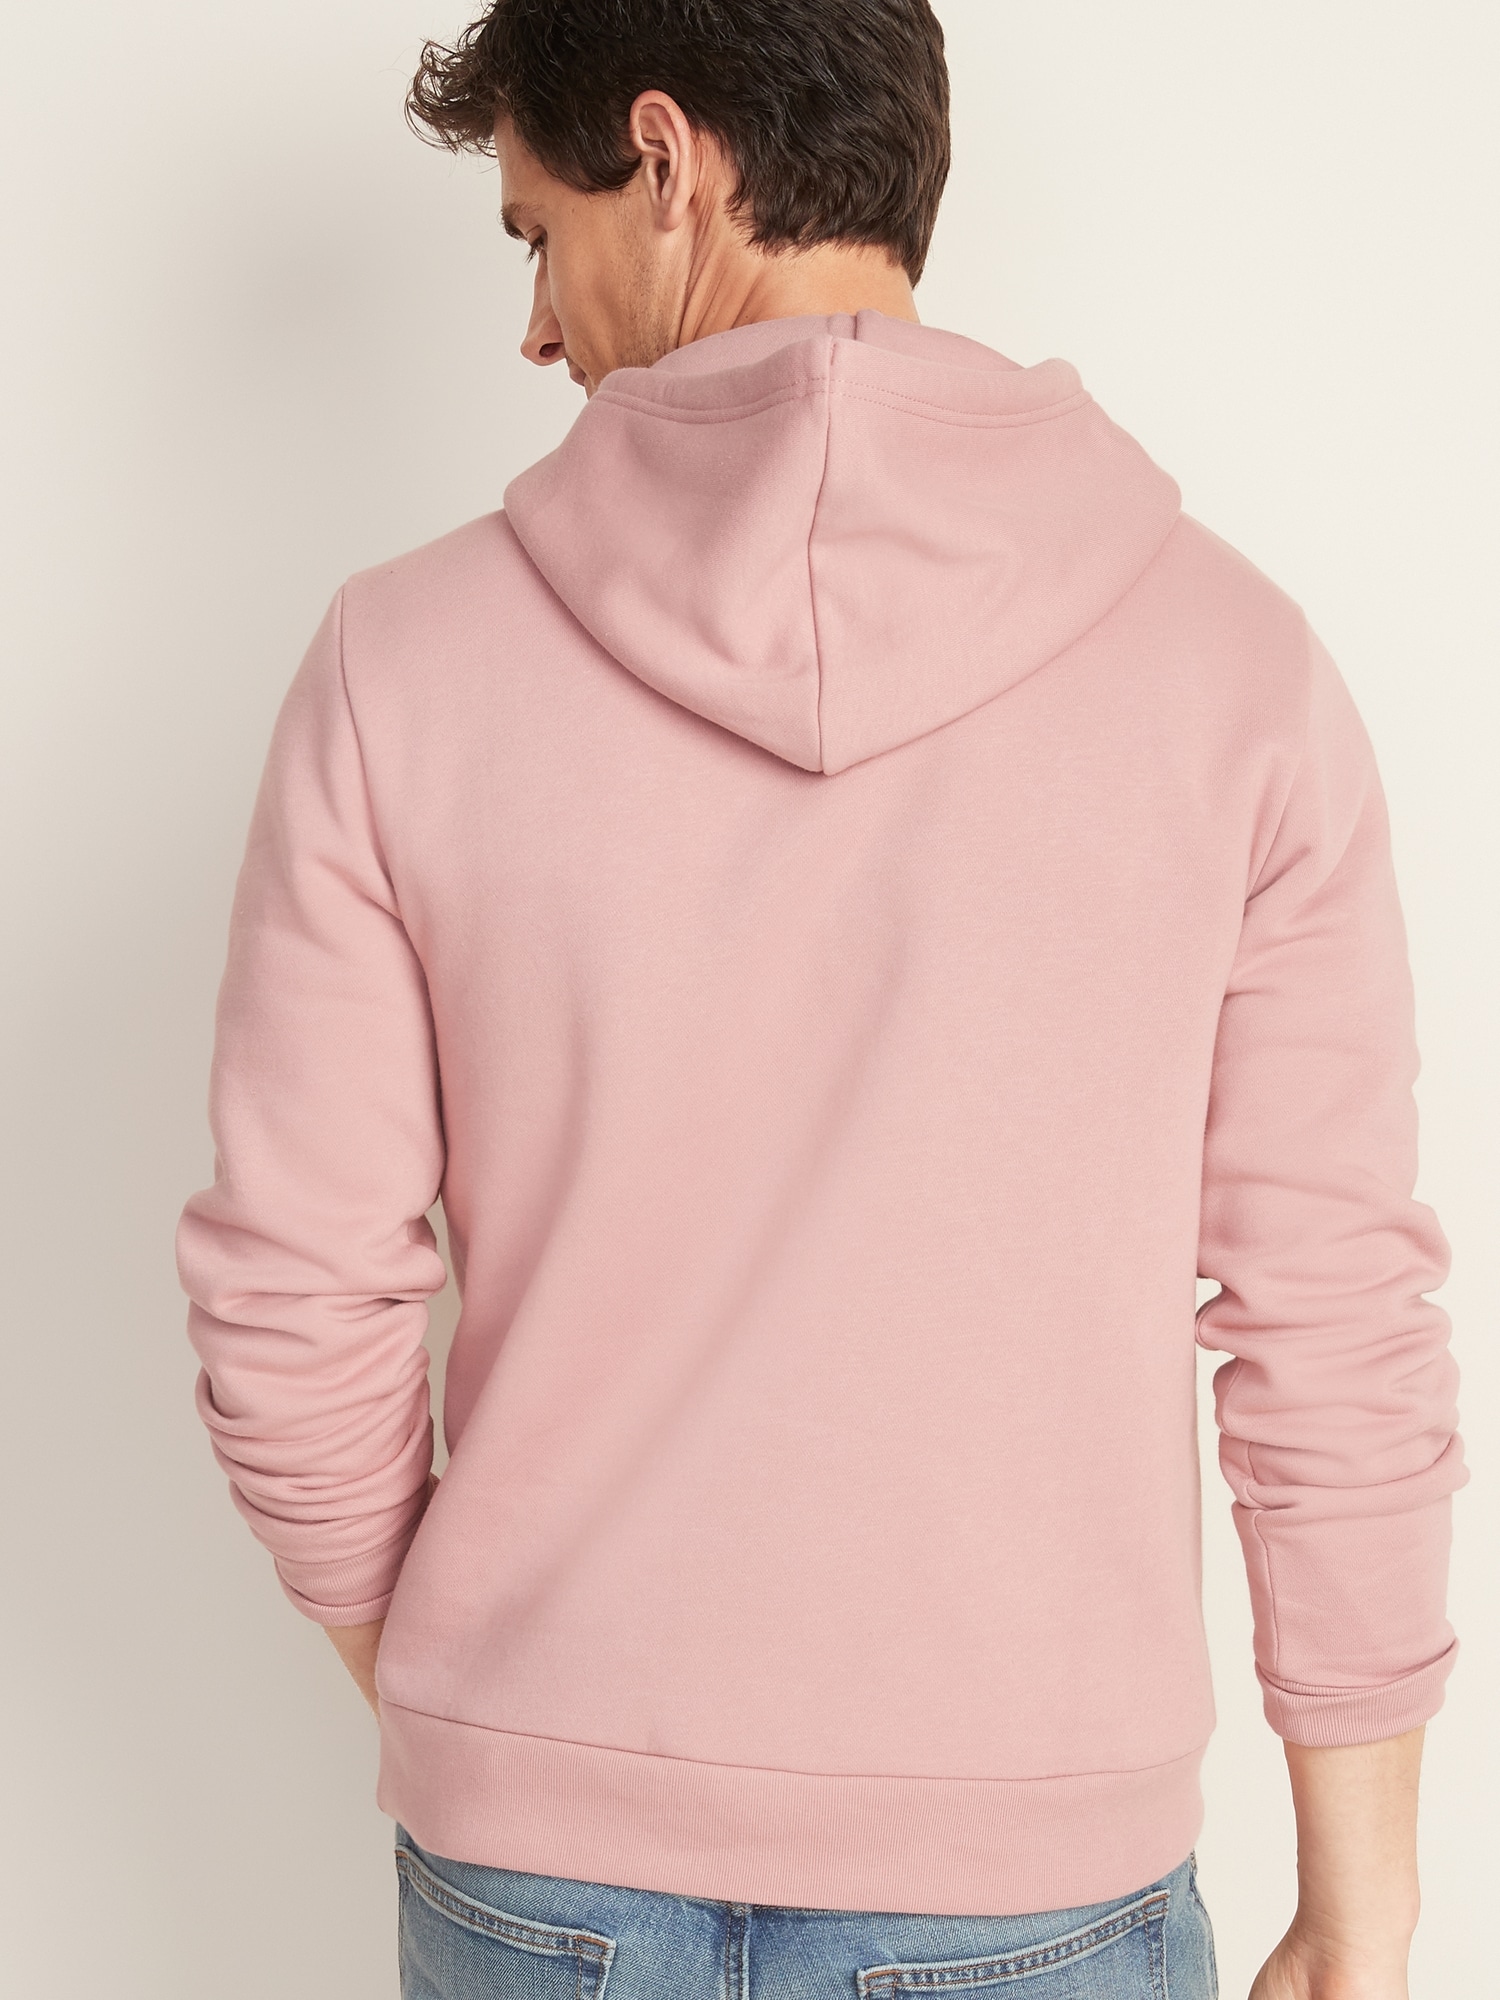 rose colored hoodie men